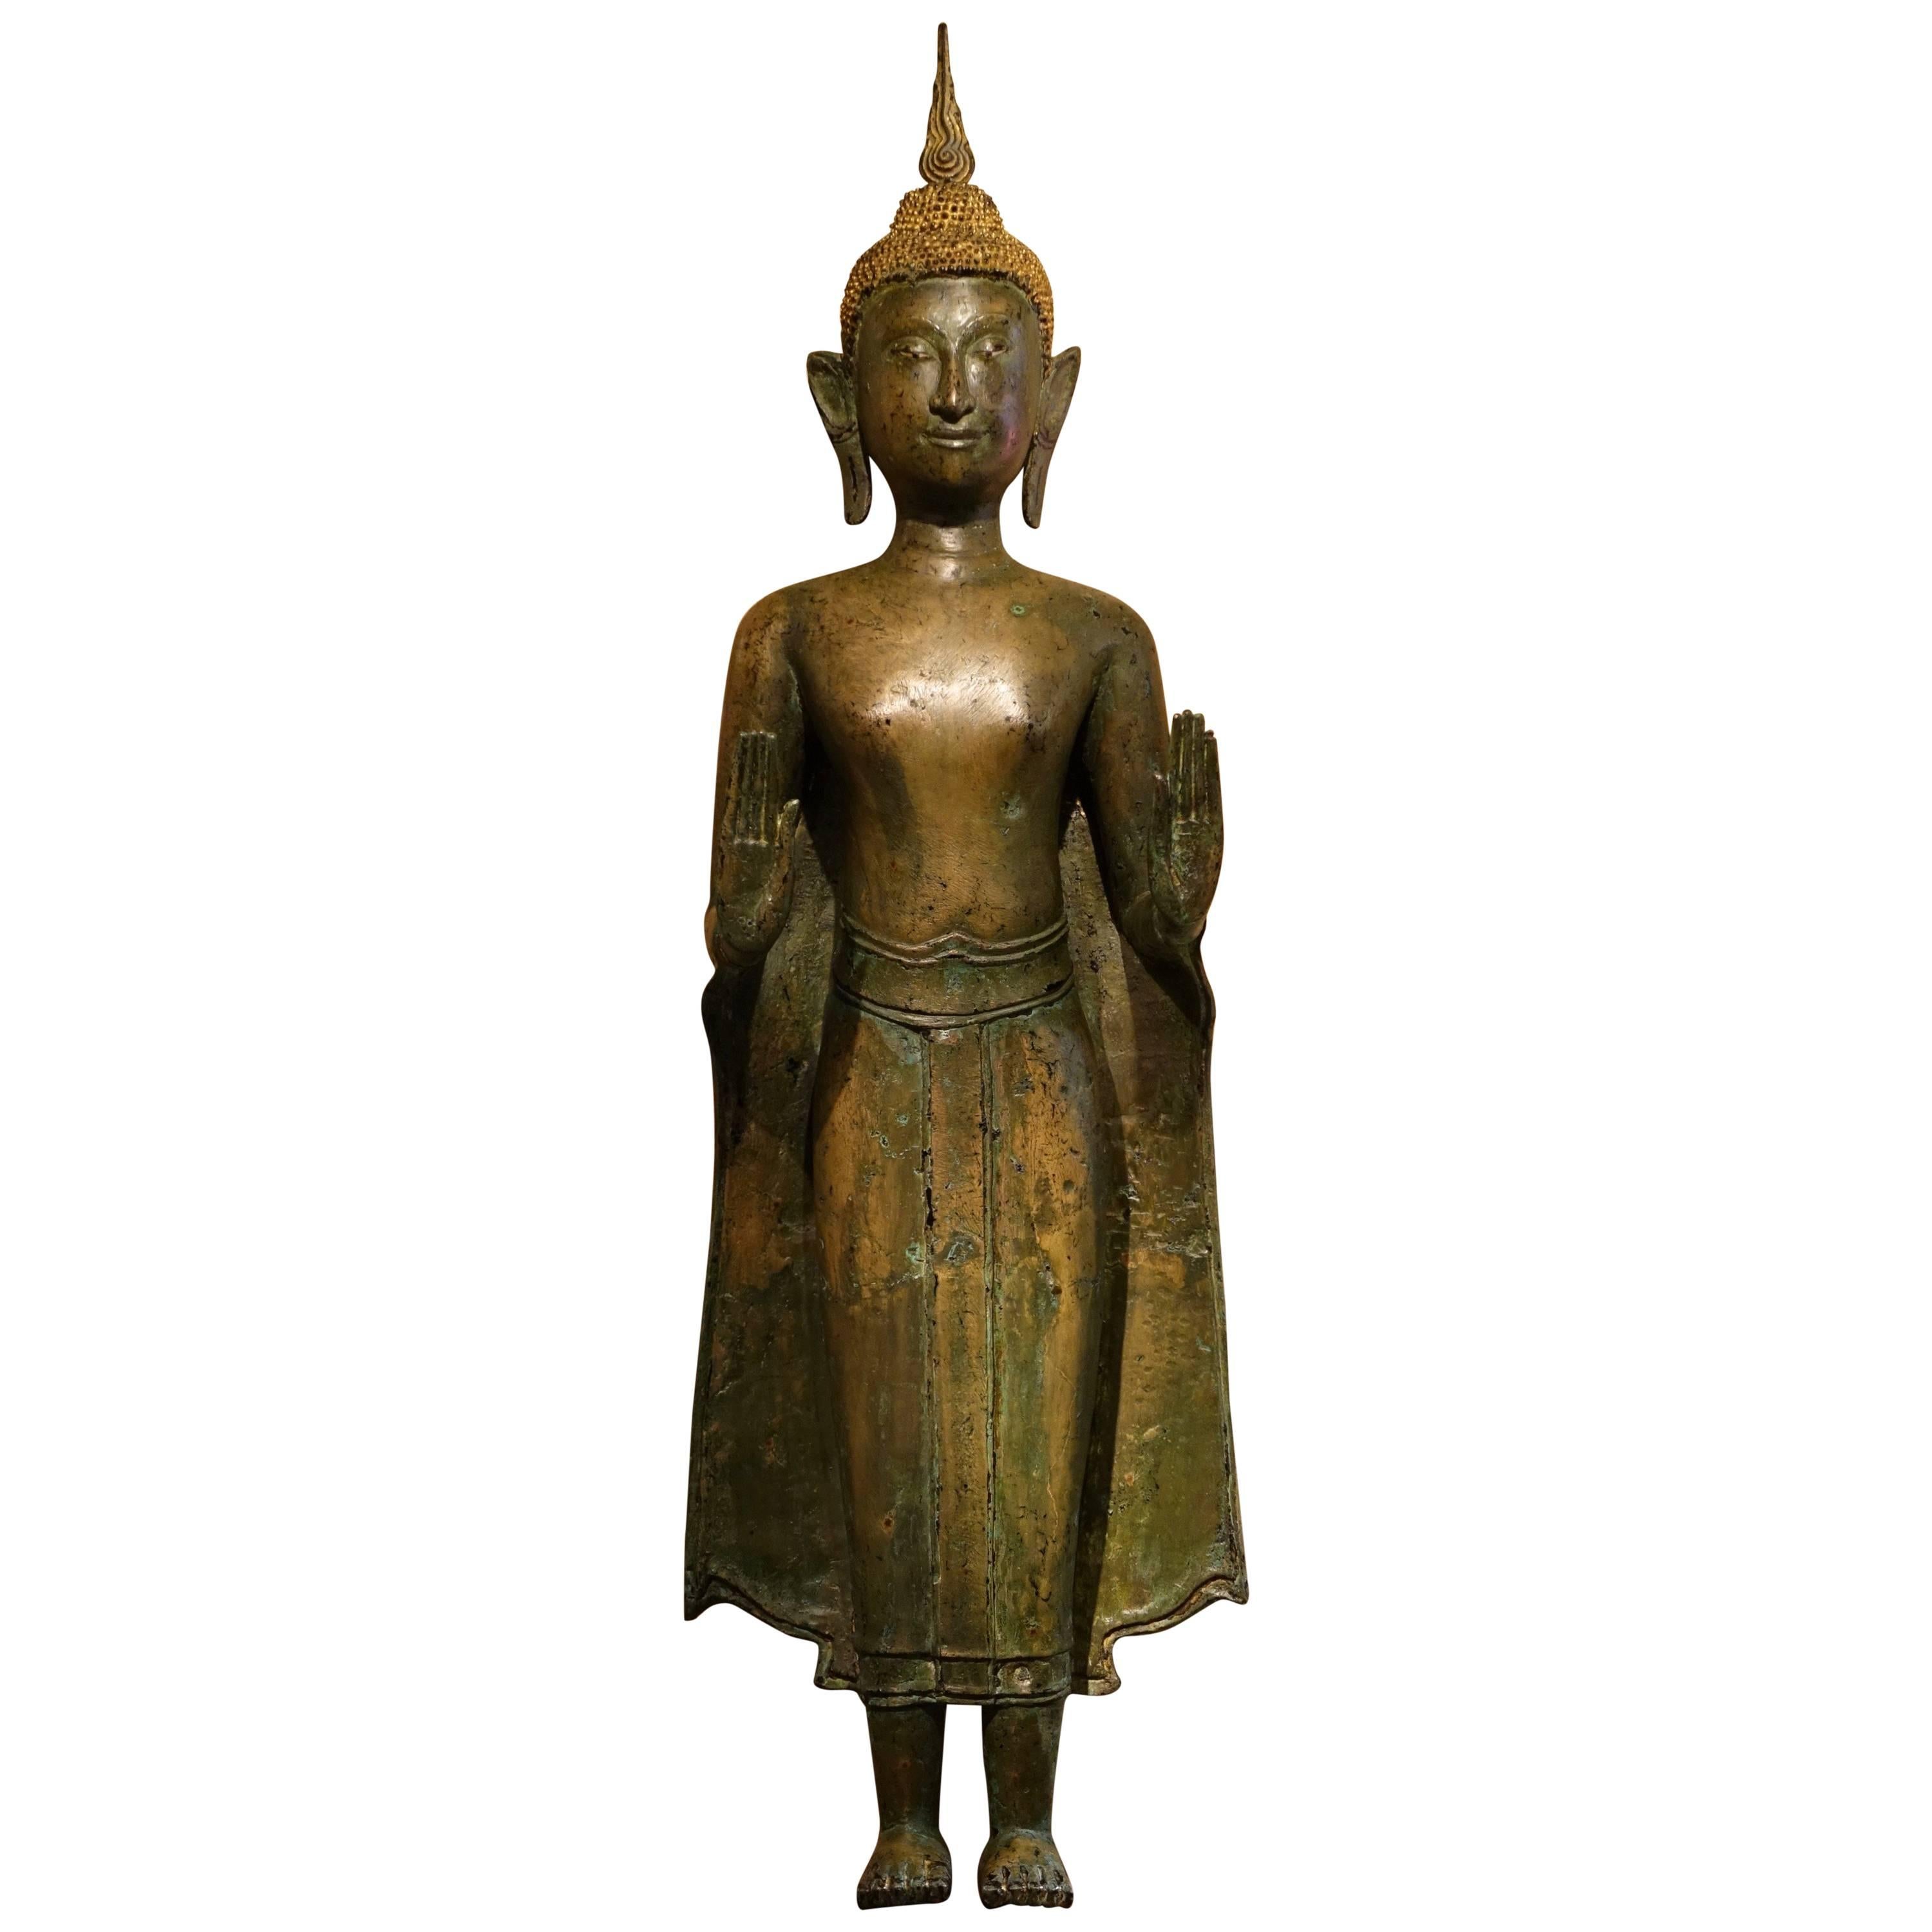 Ayutthaya Style Standing Bronze Figure of Buddha, Mid-17th Century, Thailand